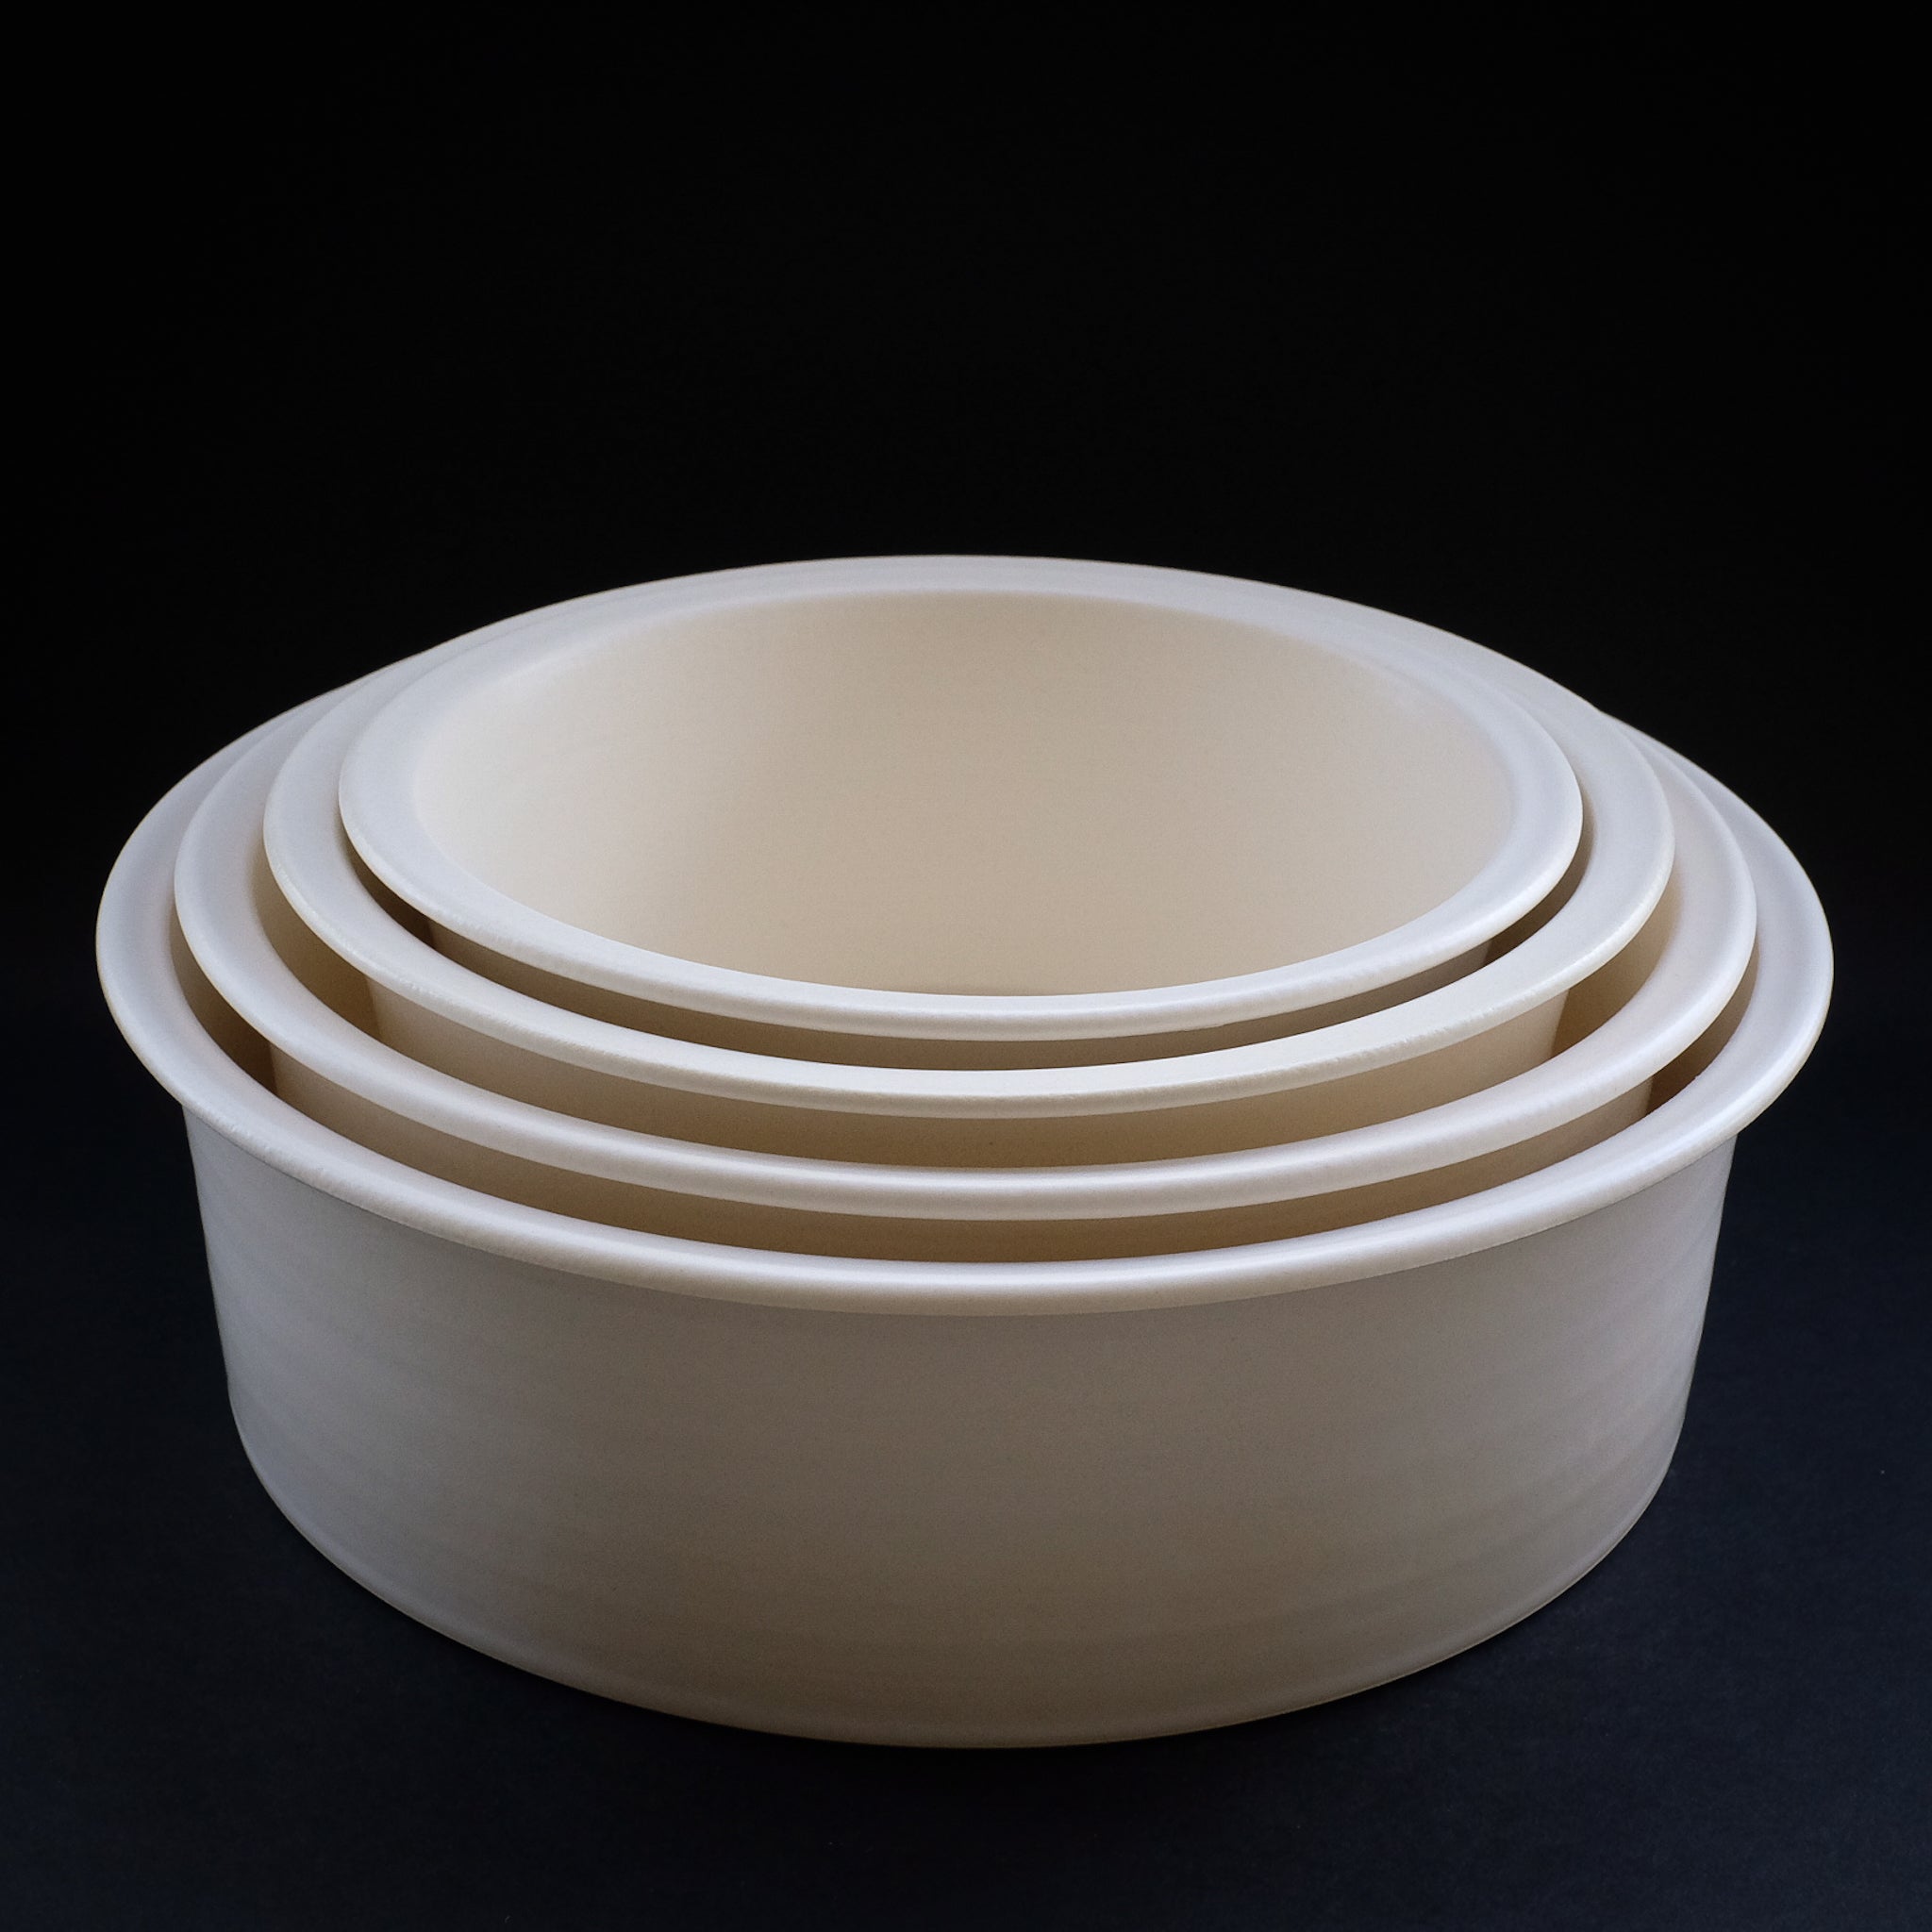 大谷製陶所 ( 大谷哲也 ) 平鍋 深 φ18 cm Otani Pottery Studio 